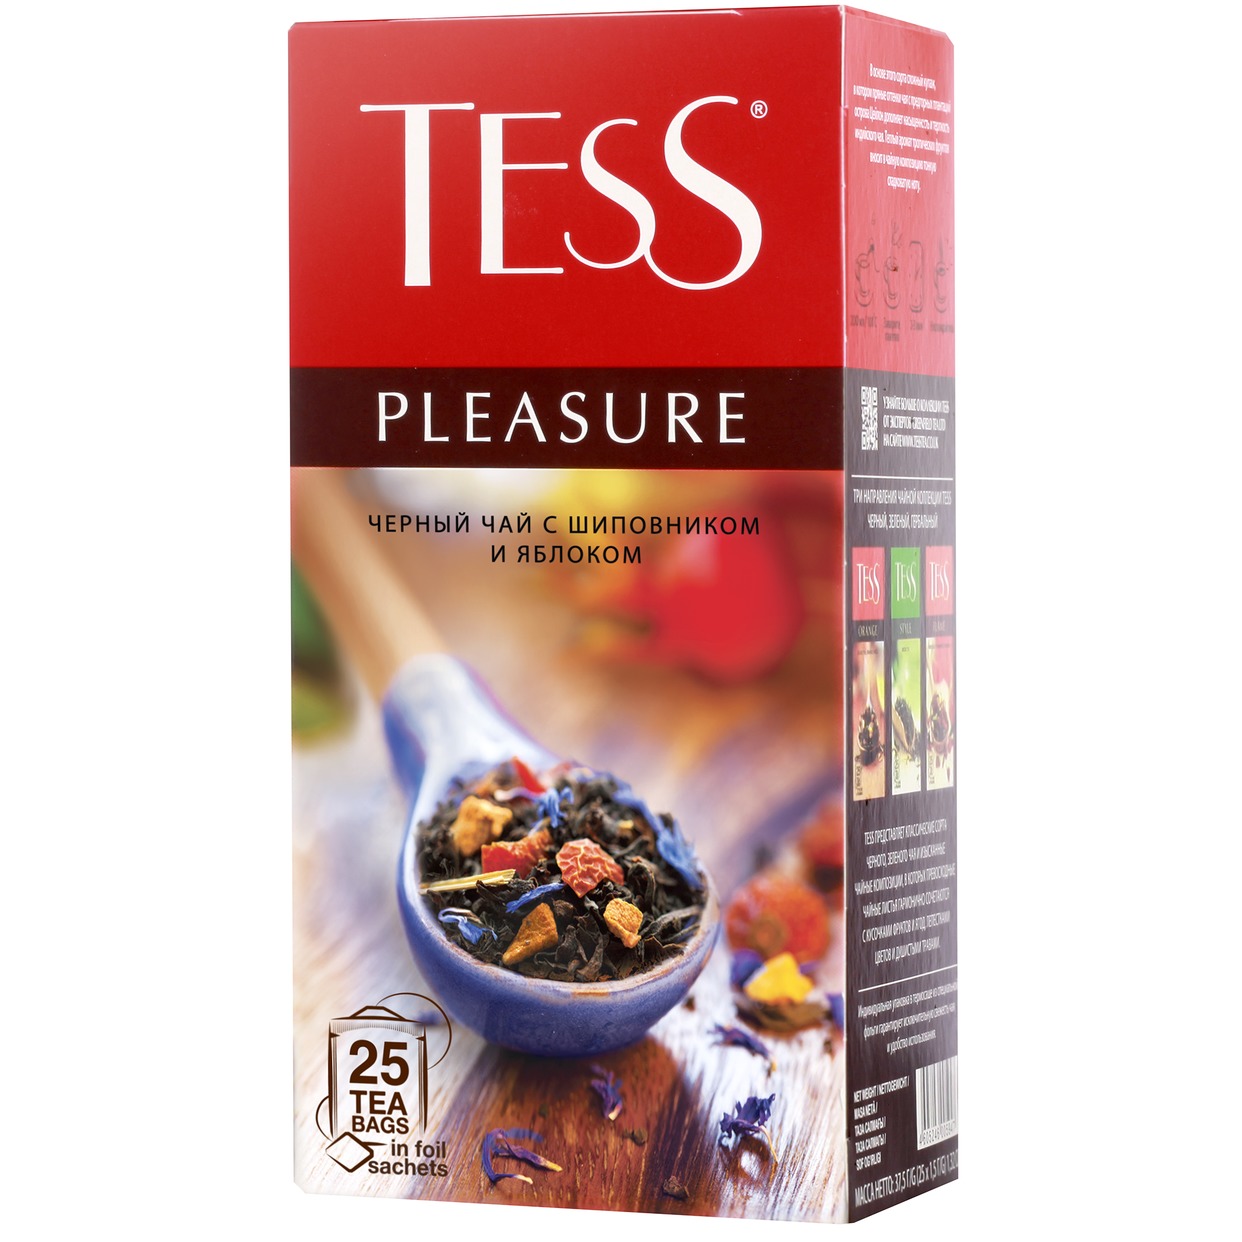 Чай Tess Pleasure черный с шиповником и яблоком 25пак*1,5г по акции в Пятерочке